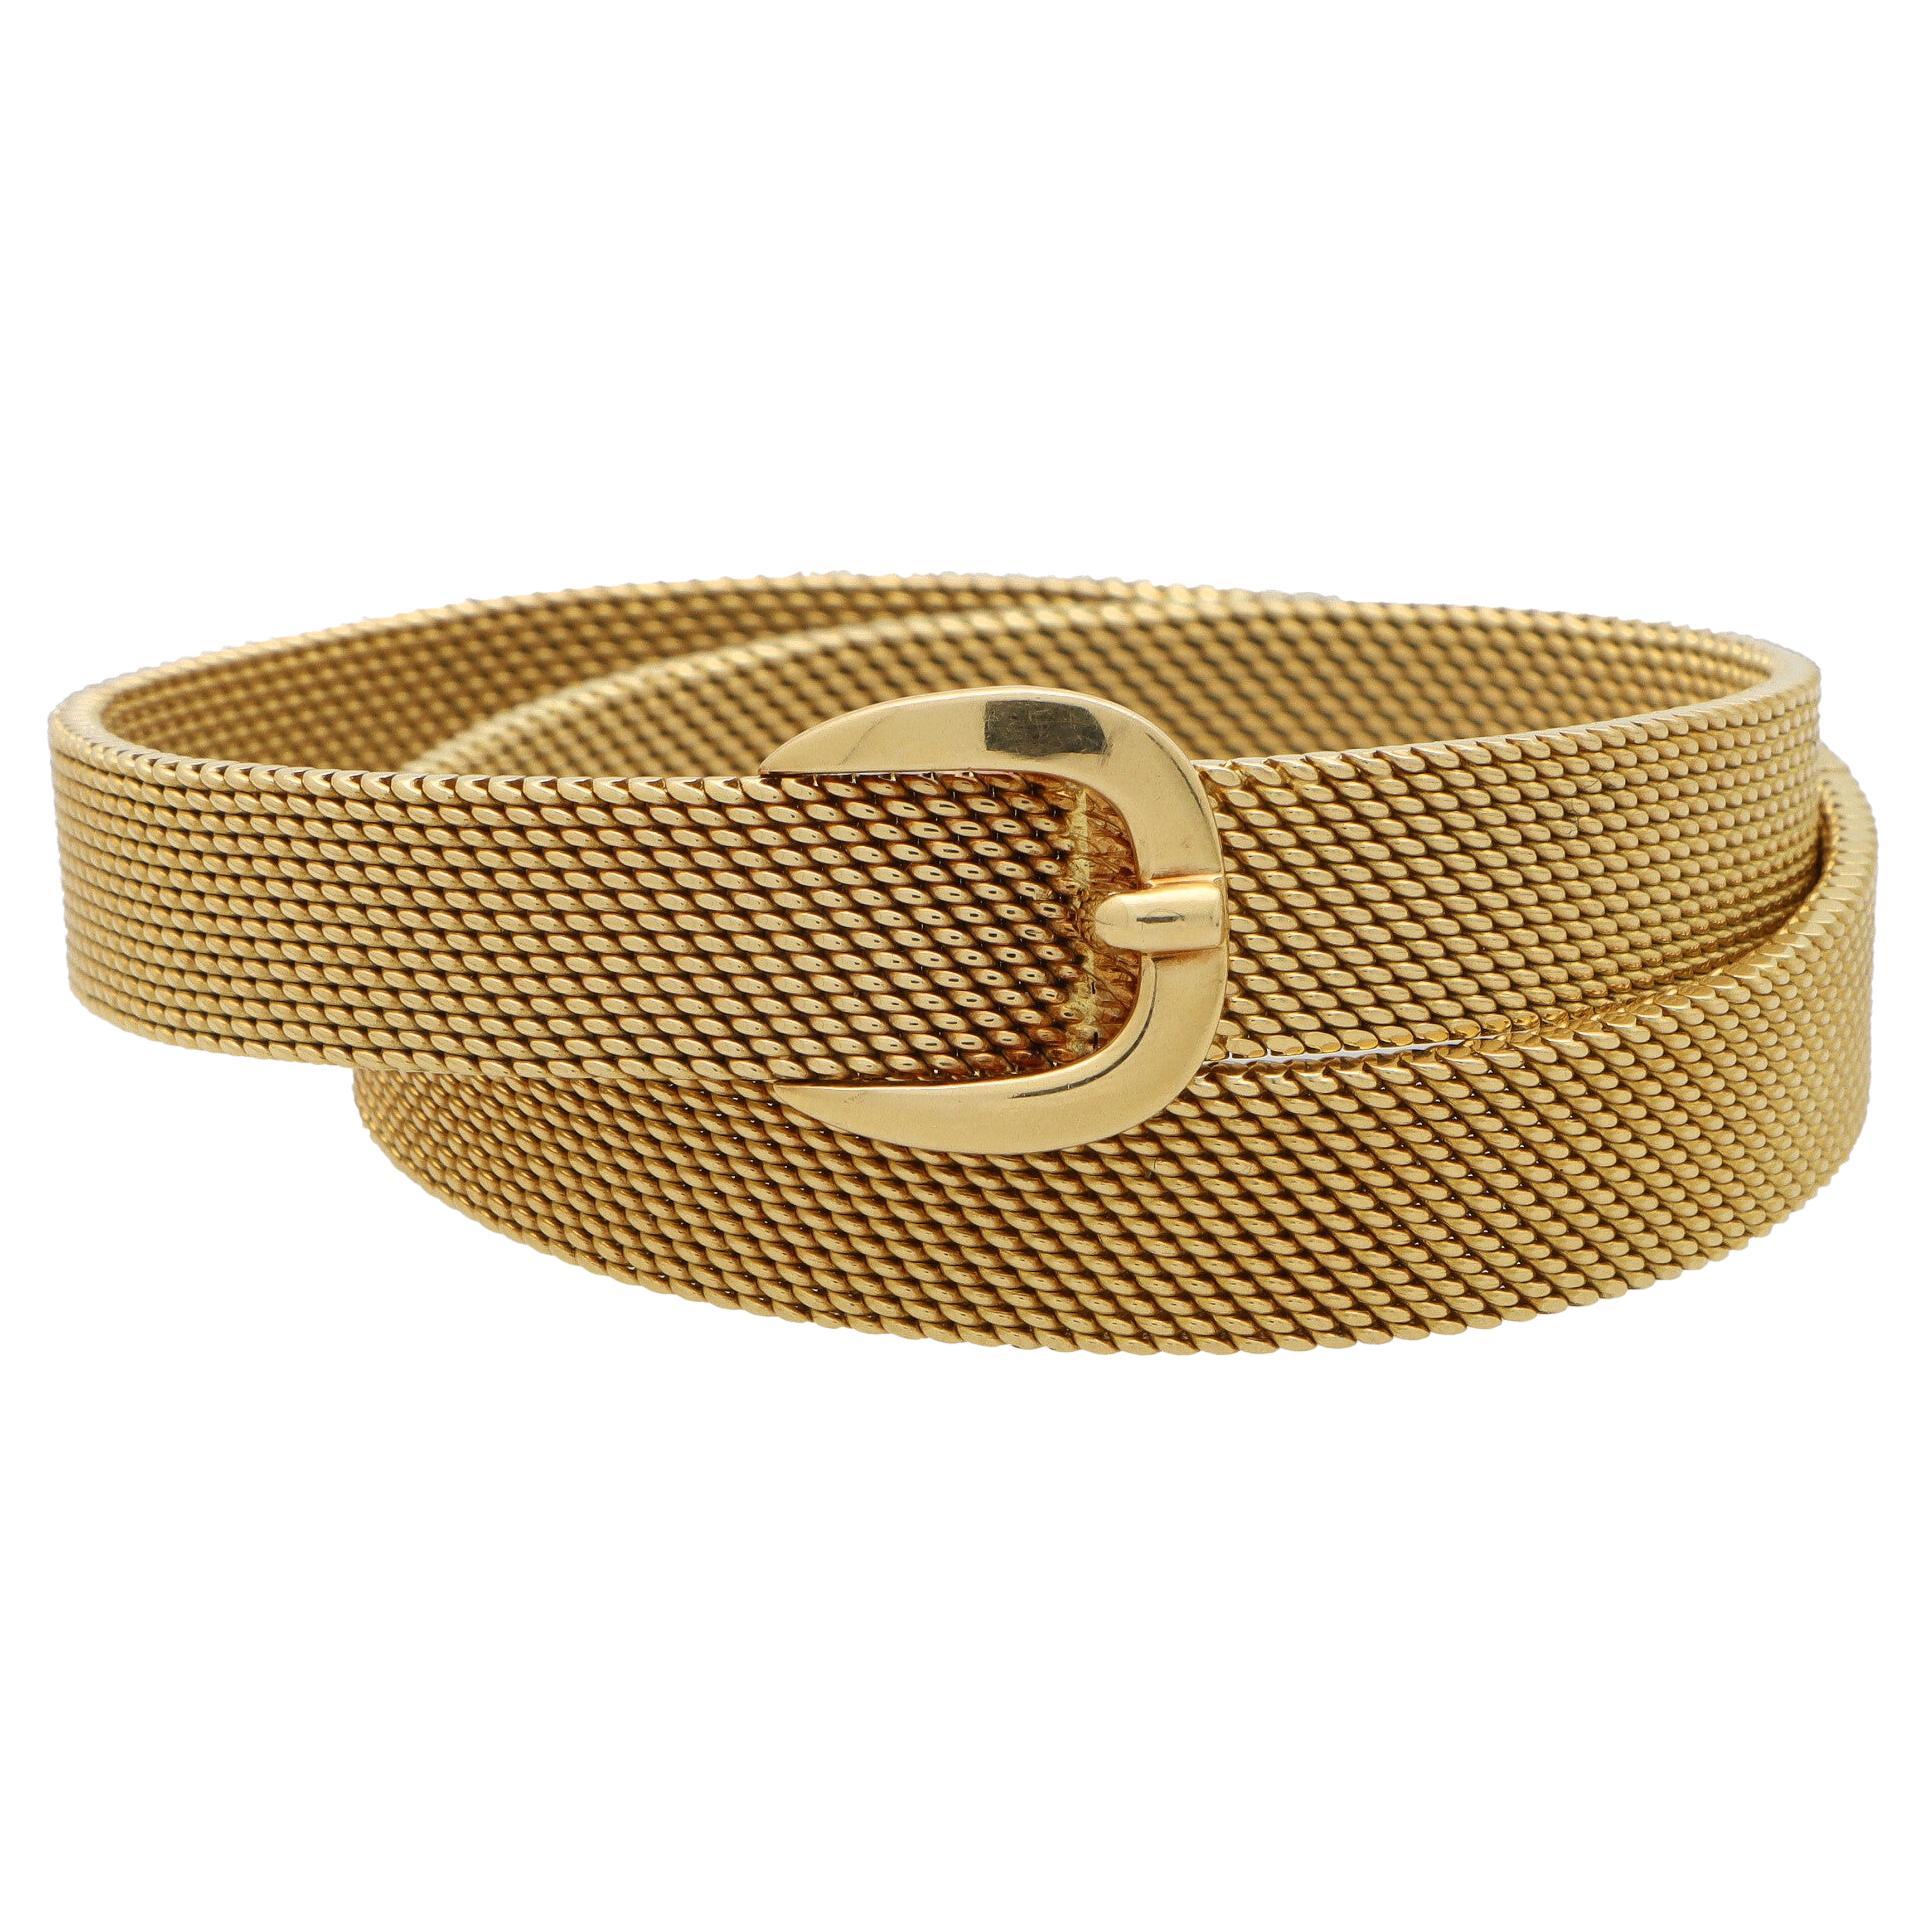 Vintage Hermès Belt Buckle Wrap Bracelet Set in Solid 18k Yellow Gold For Sale